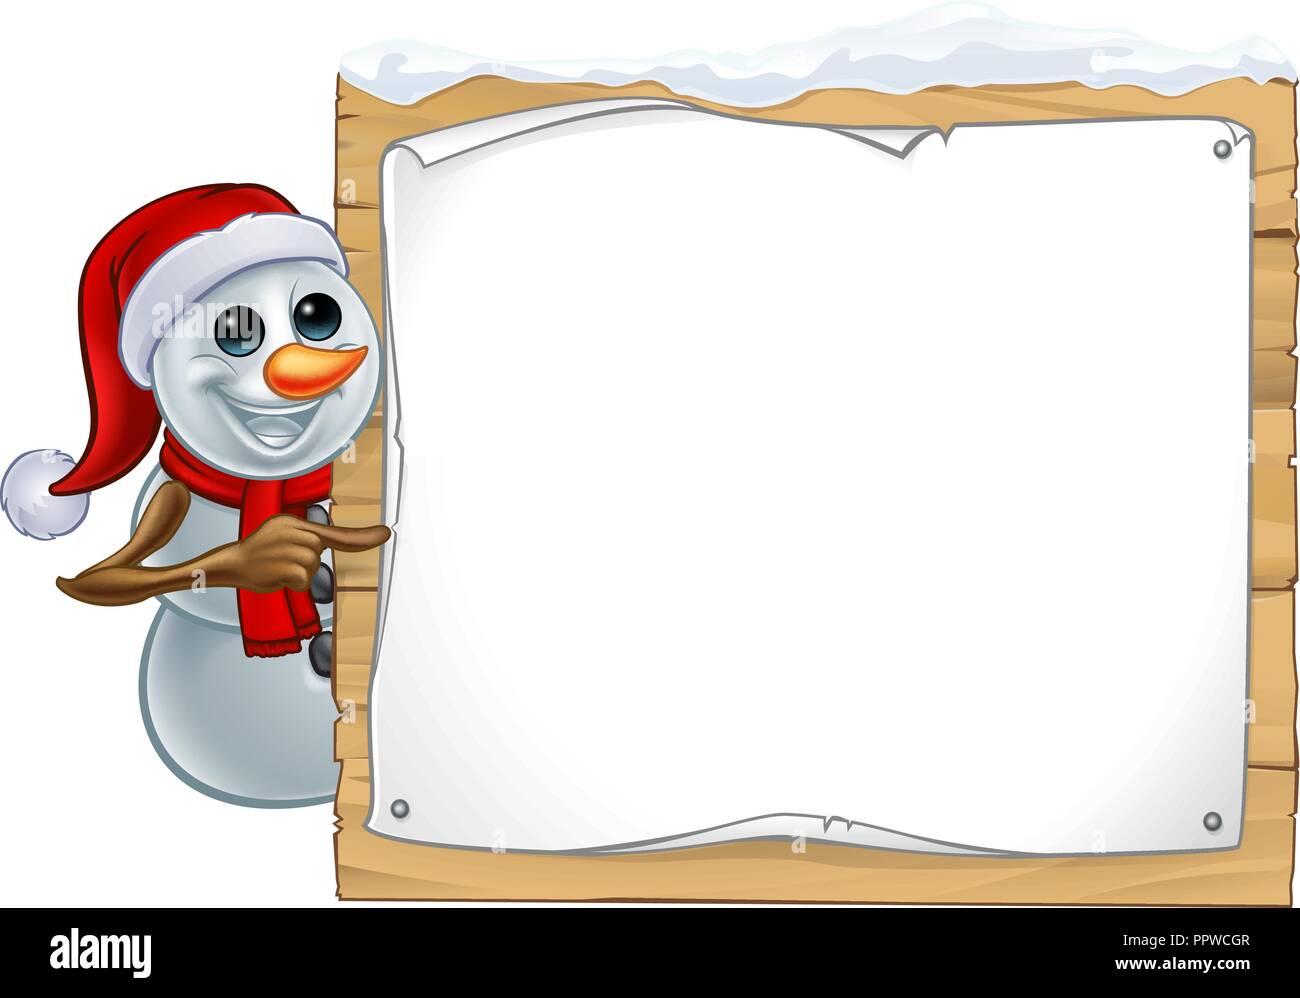 Muñeco de Nieve Navidad Cartoon firmar Ilustración del Vector